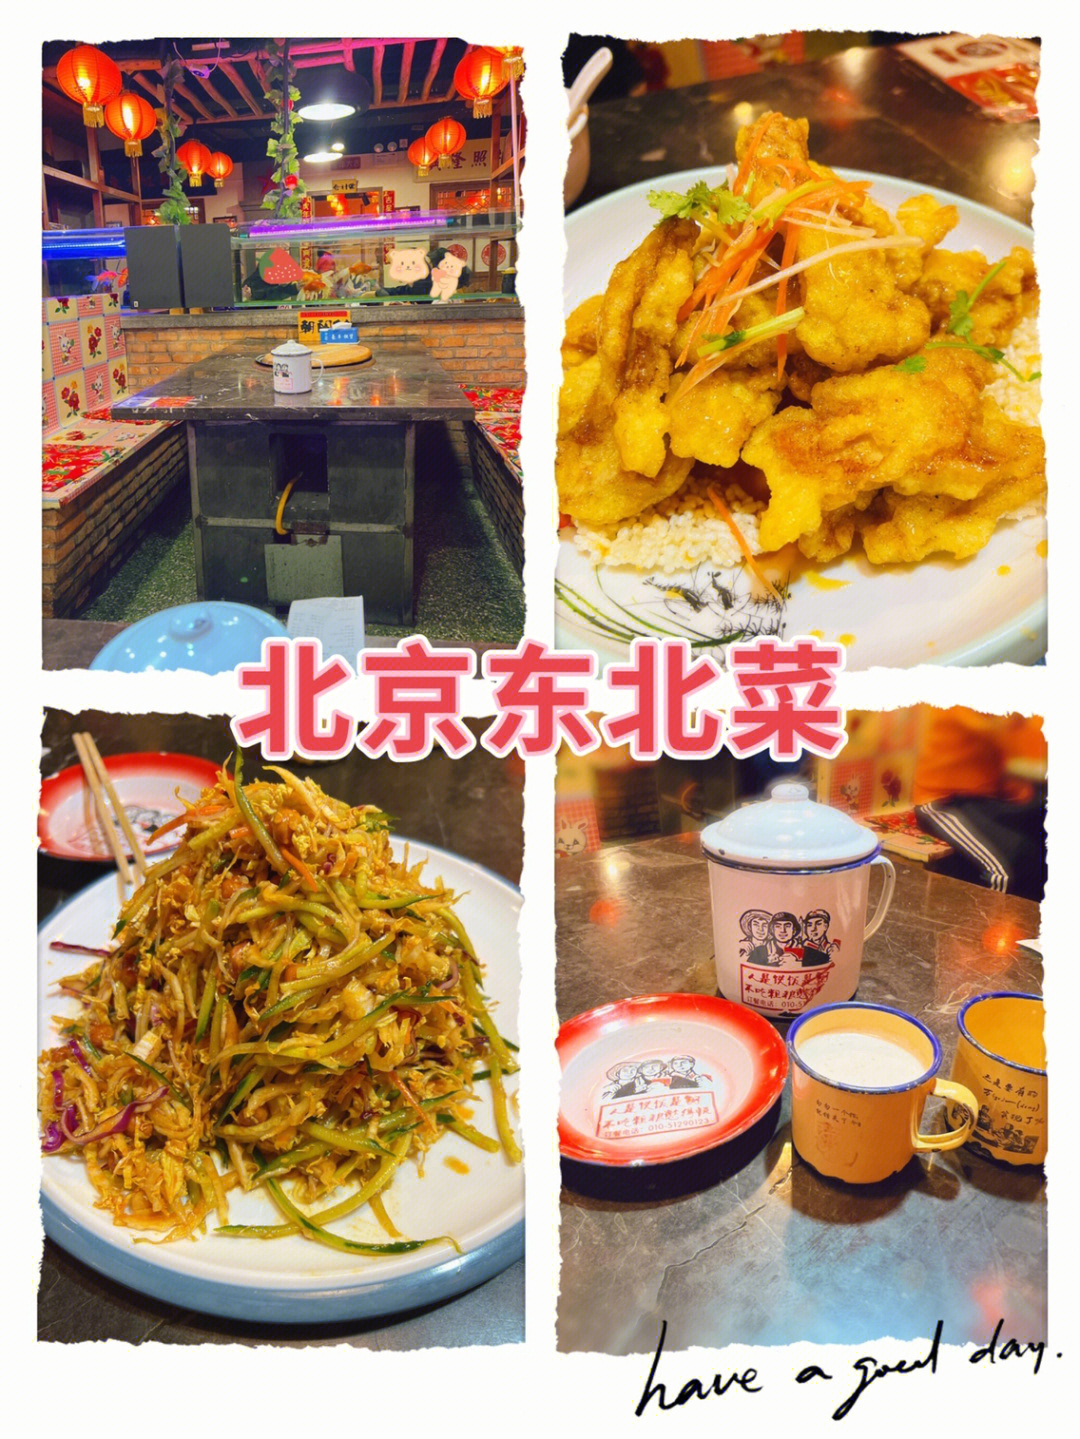 北京好吃的饭店图片